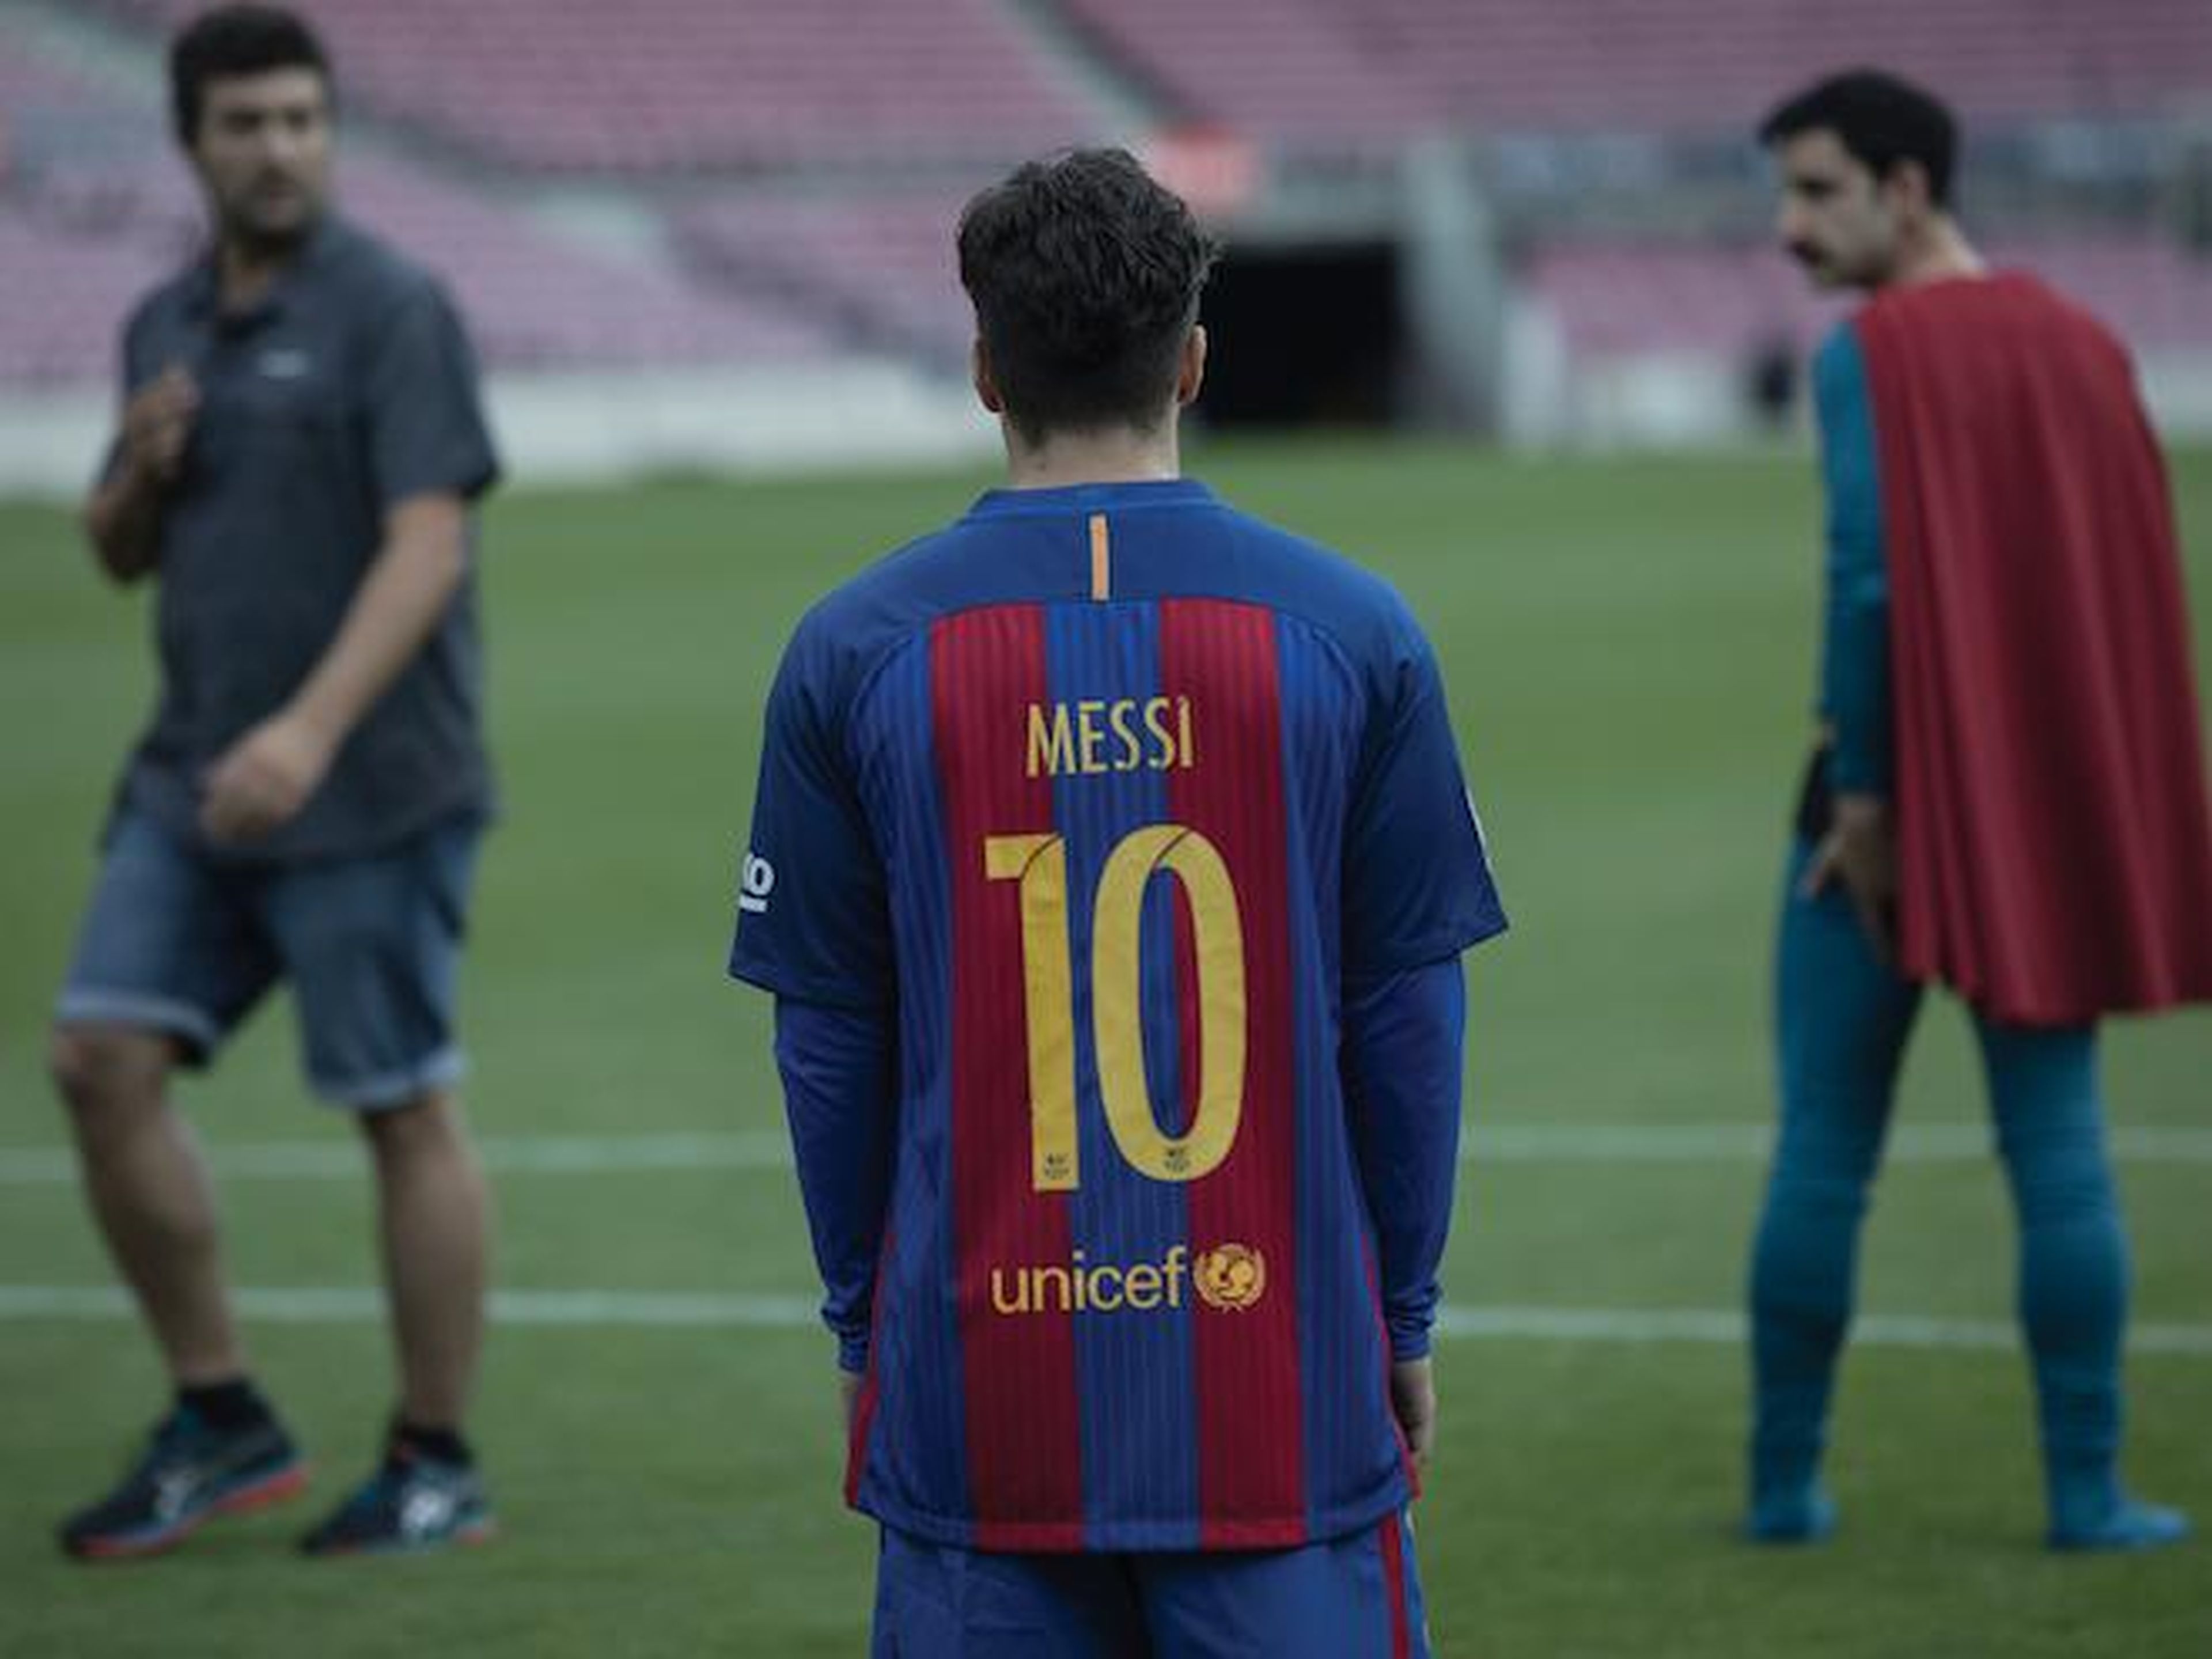 Imágenes de Superlópez en el Camp Nou